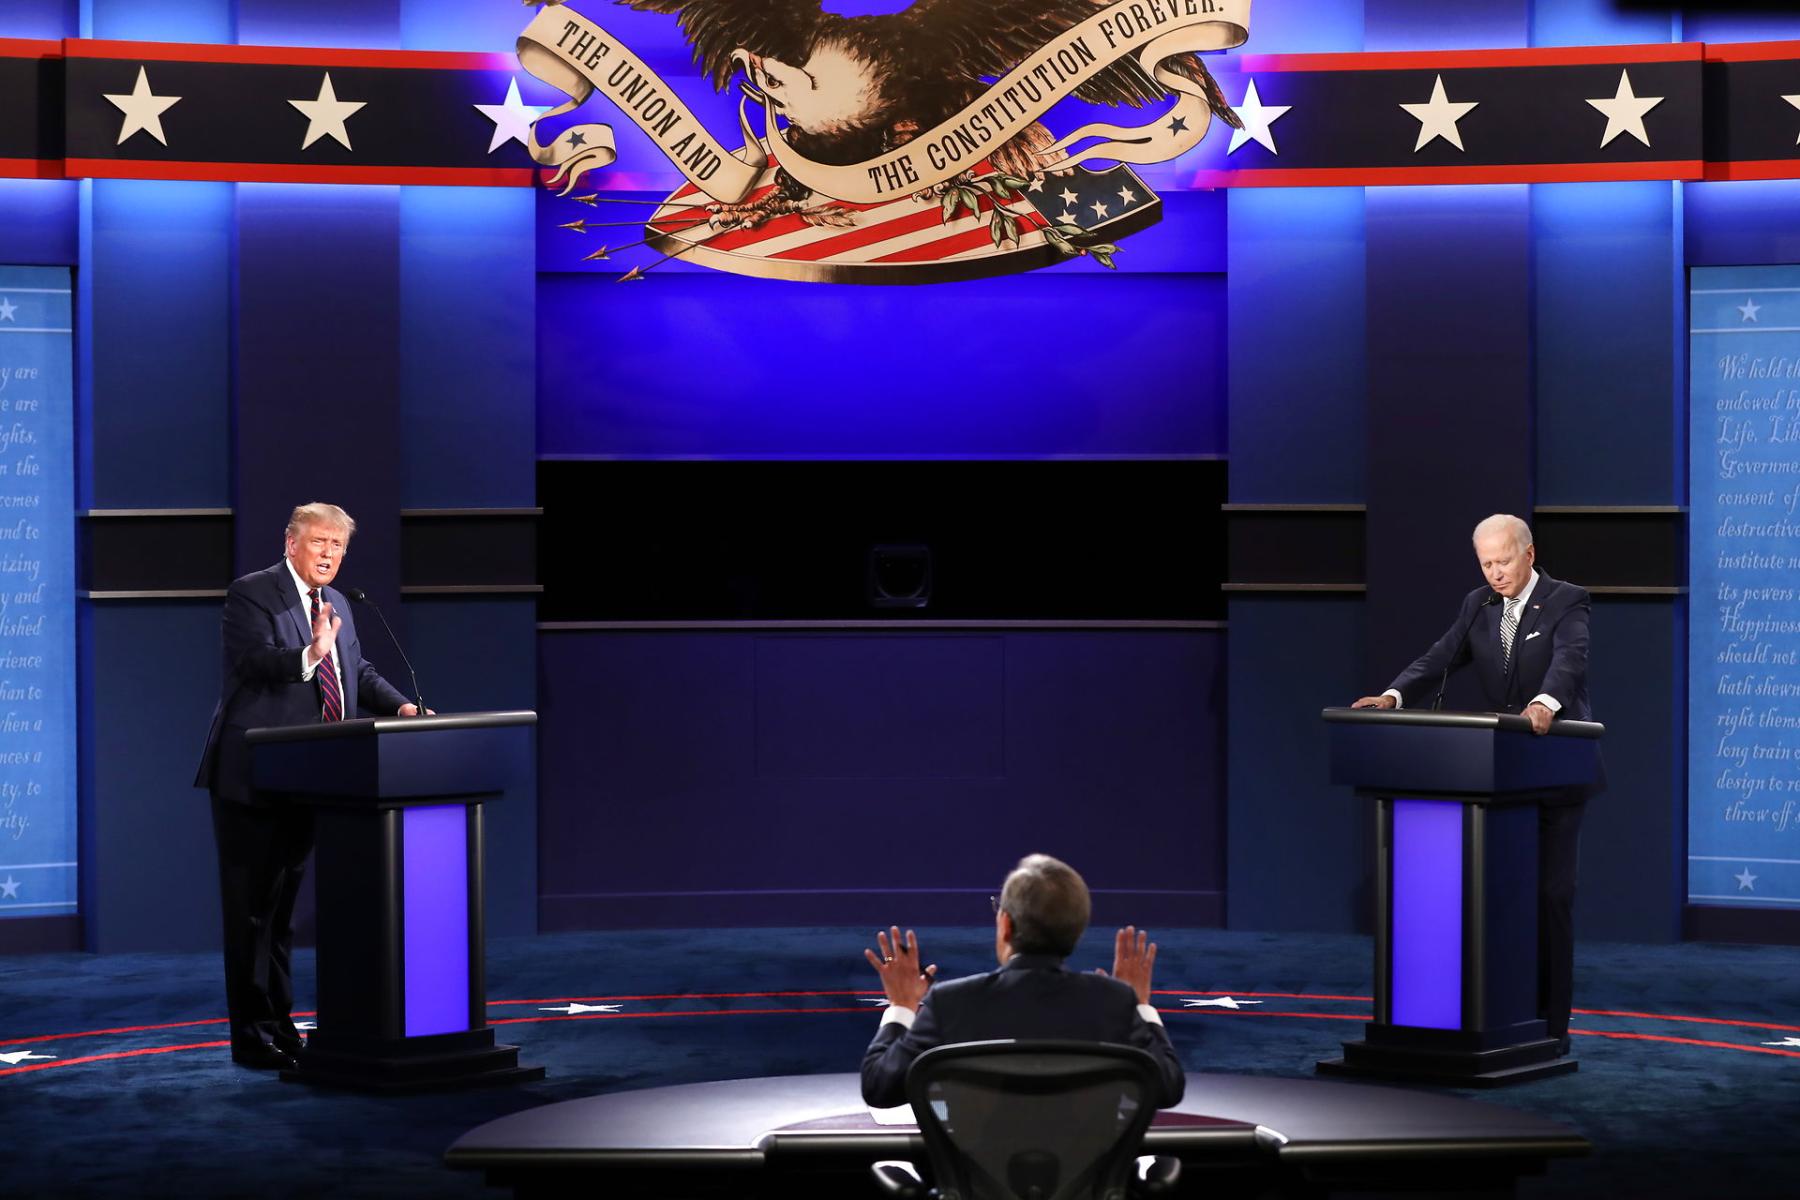 Presidential debate, American election